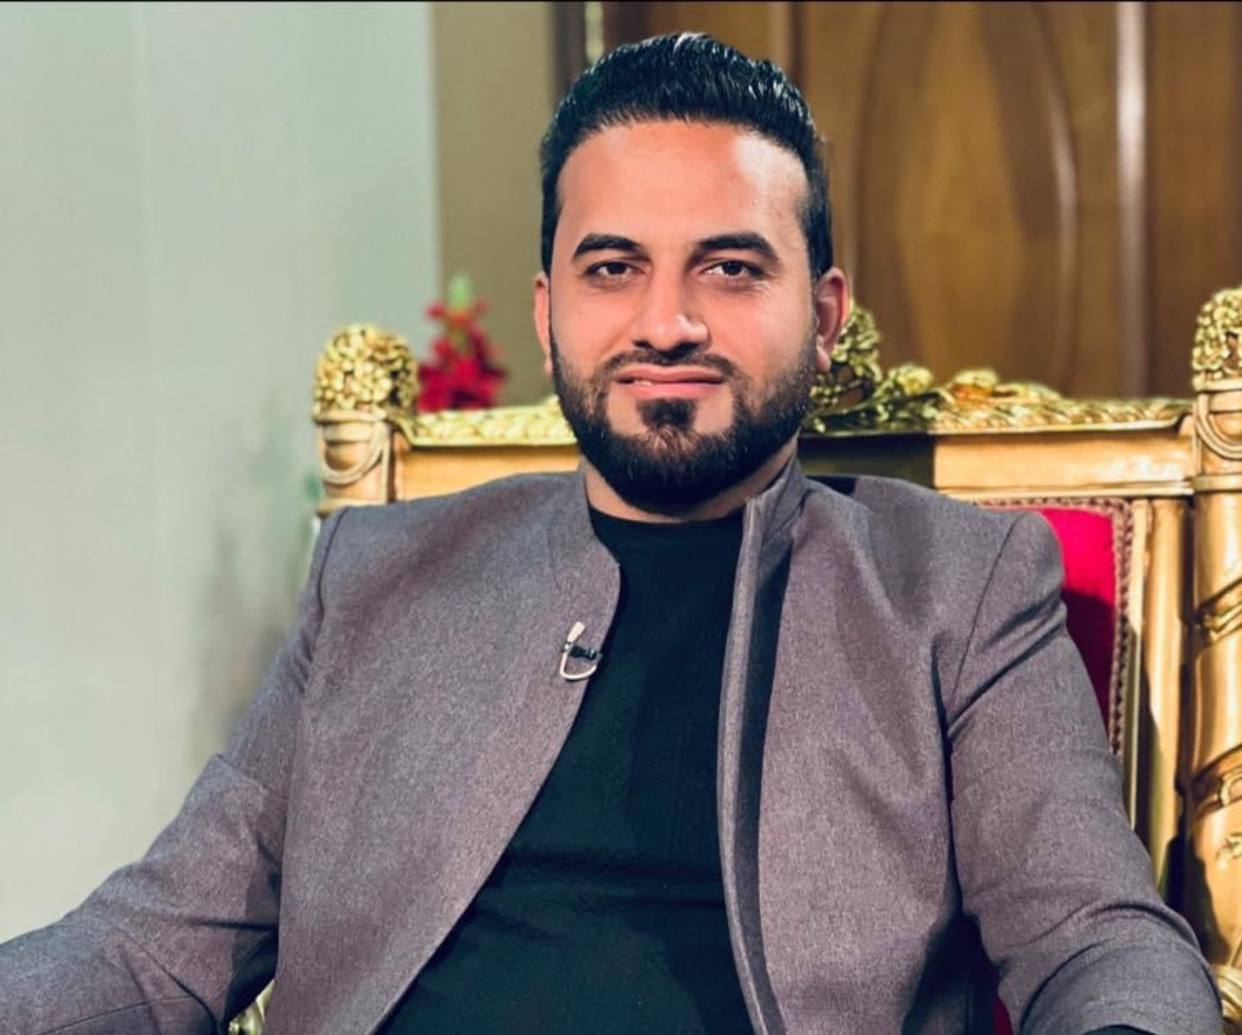 وزير الداخلية يقاضي الإعلامي حيدر الحمداني بتهمة القذف والتشهير